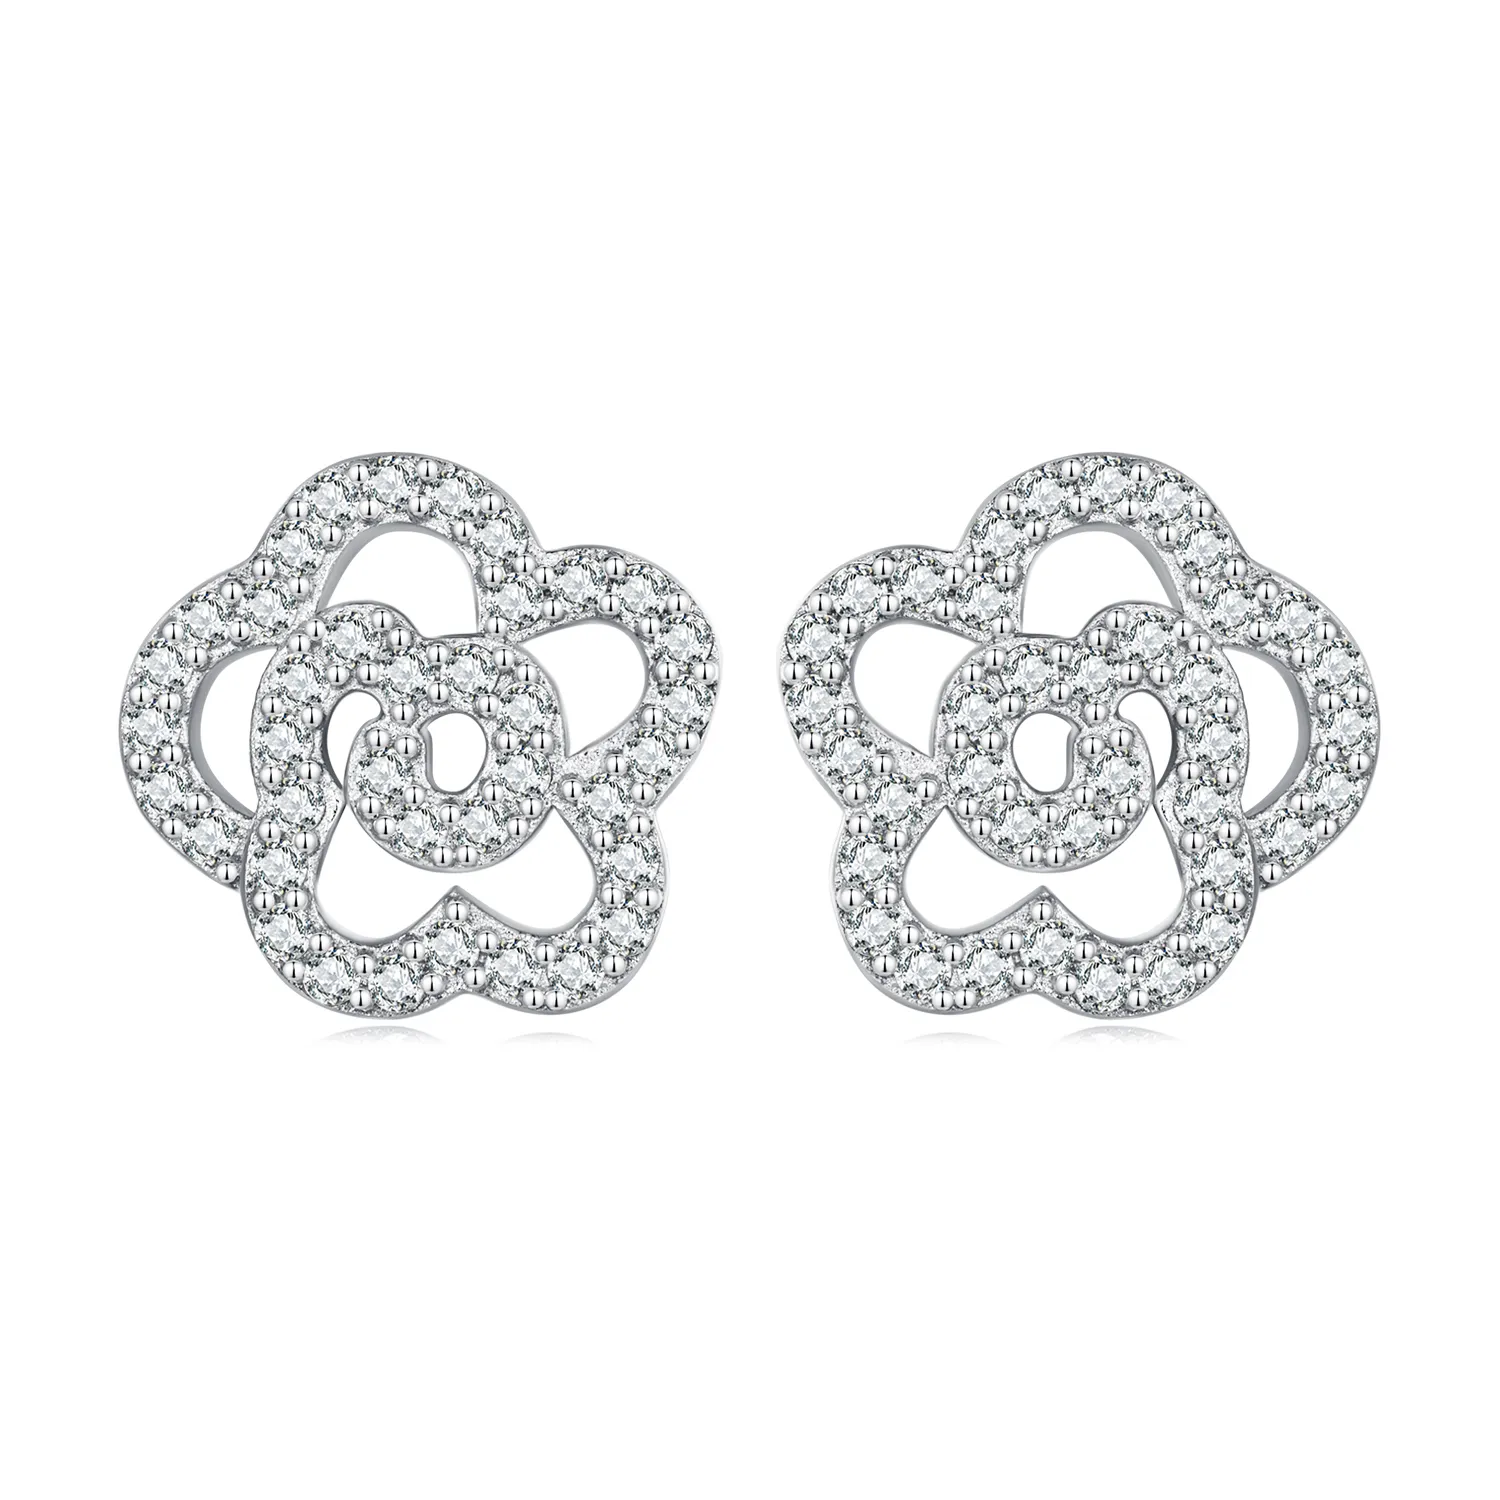 Pandora Style Roses Stud Earrings - BSE712